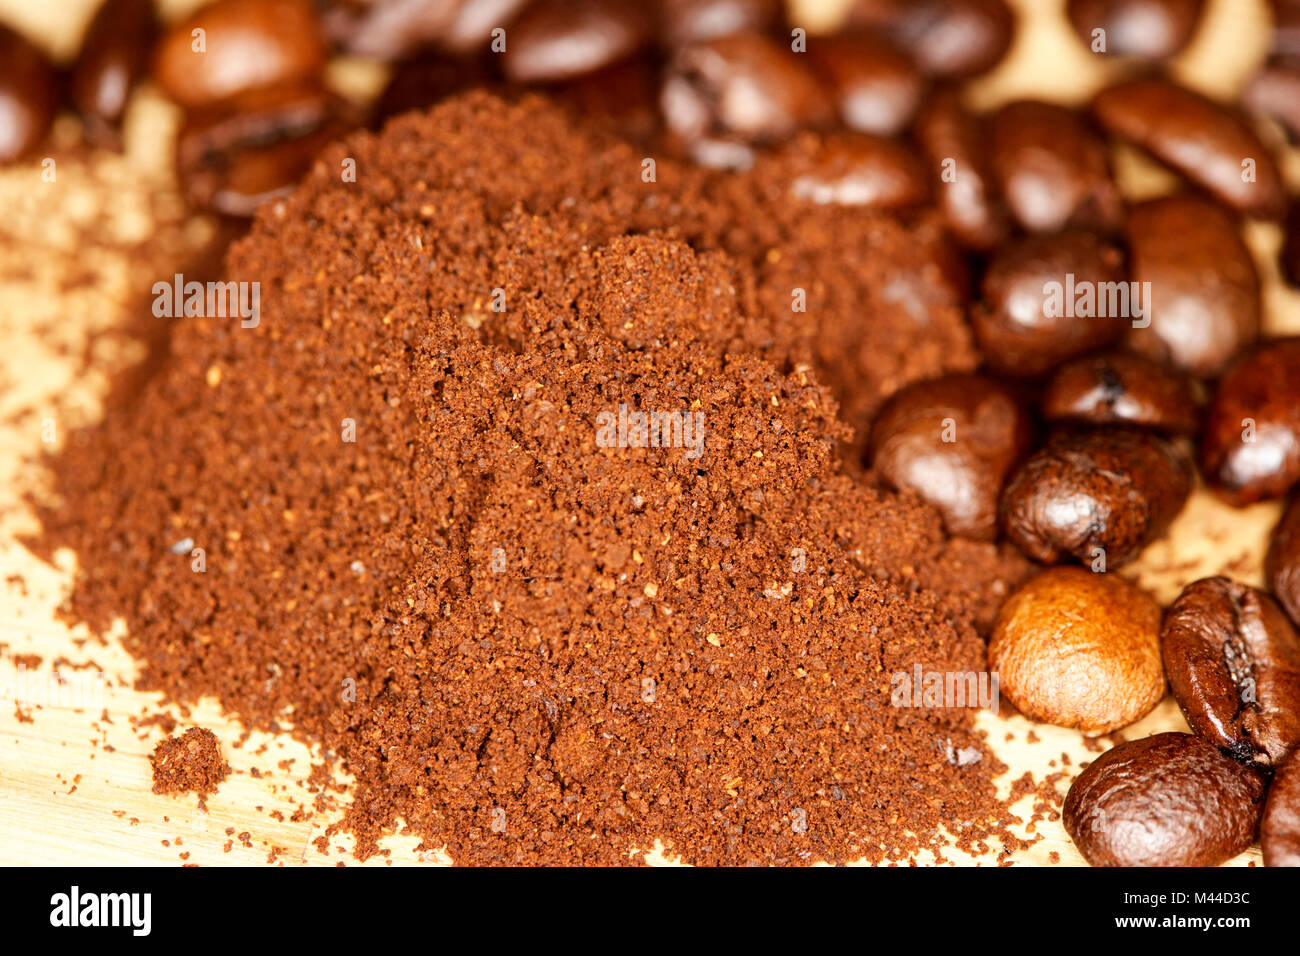 Grob mahlen frisch gemahlenen Kaffee und coffee bean Mischung aus Arabica  und Robusta Bohnen Stockfotografie - Alamy